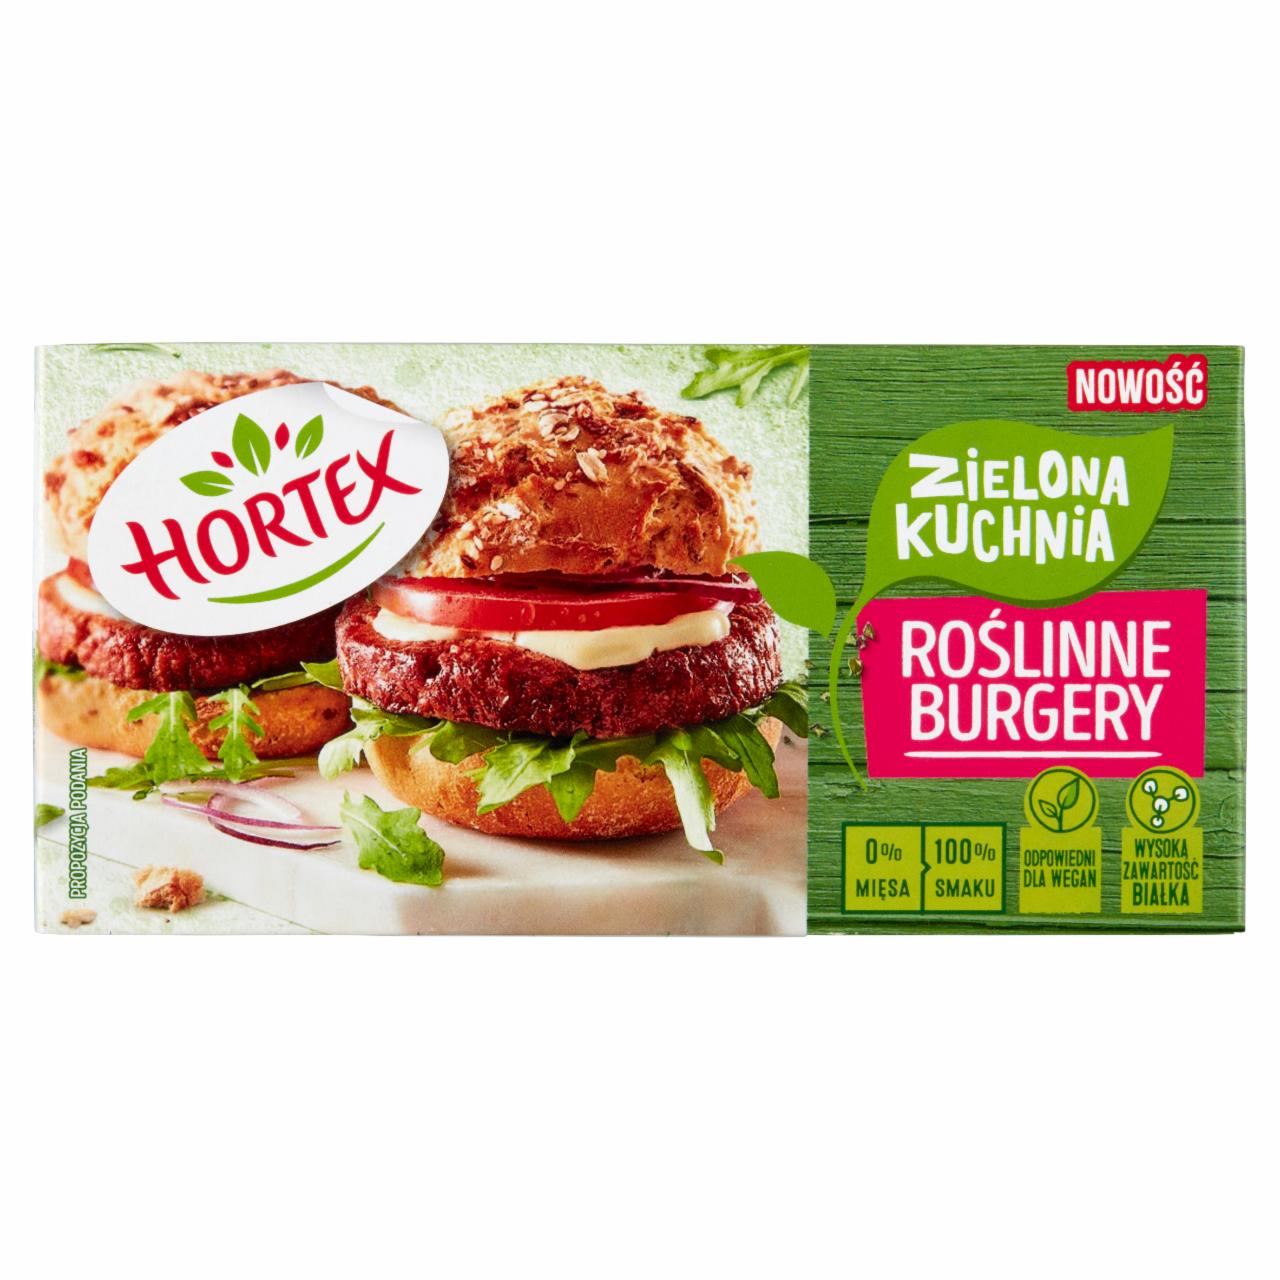 Zdjęcia - Hortex Zielona kuchnia Roślinne burgery 170 g